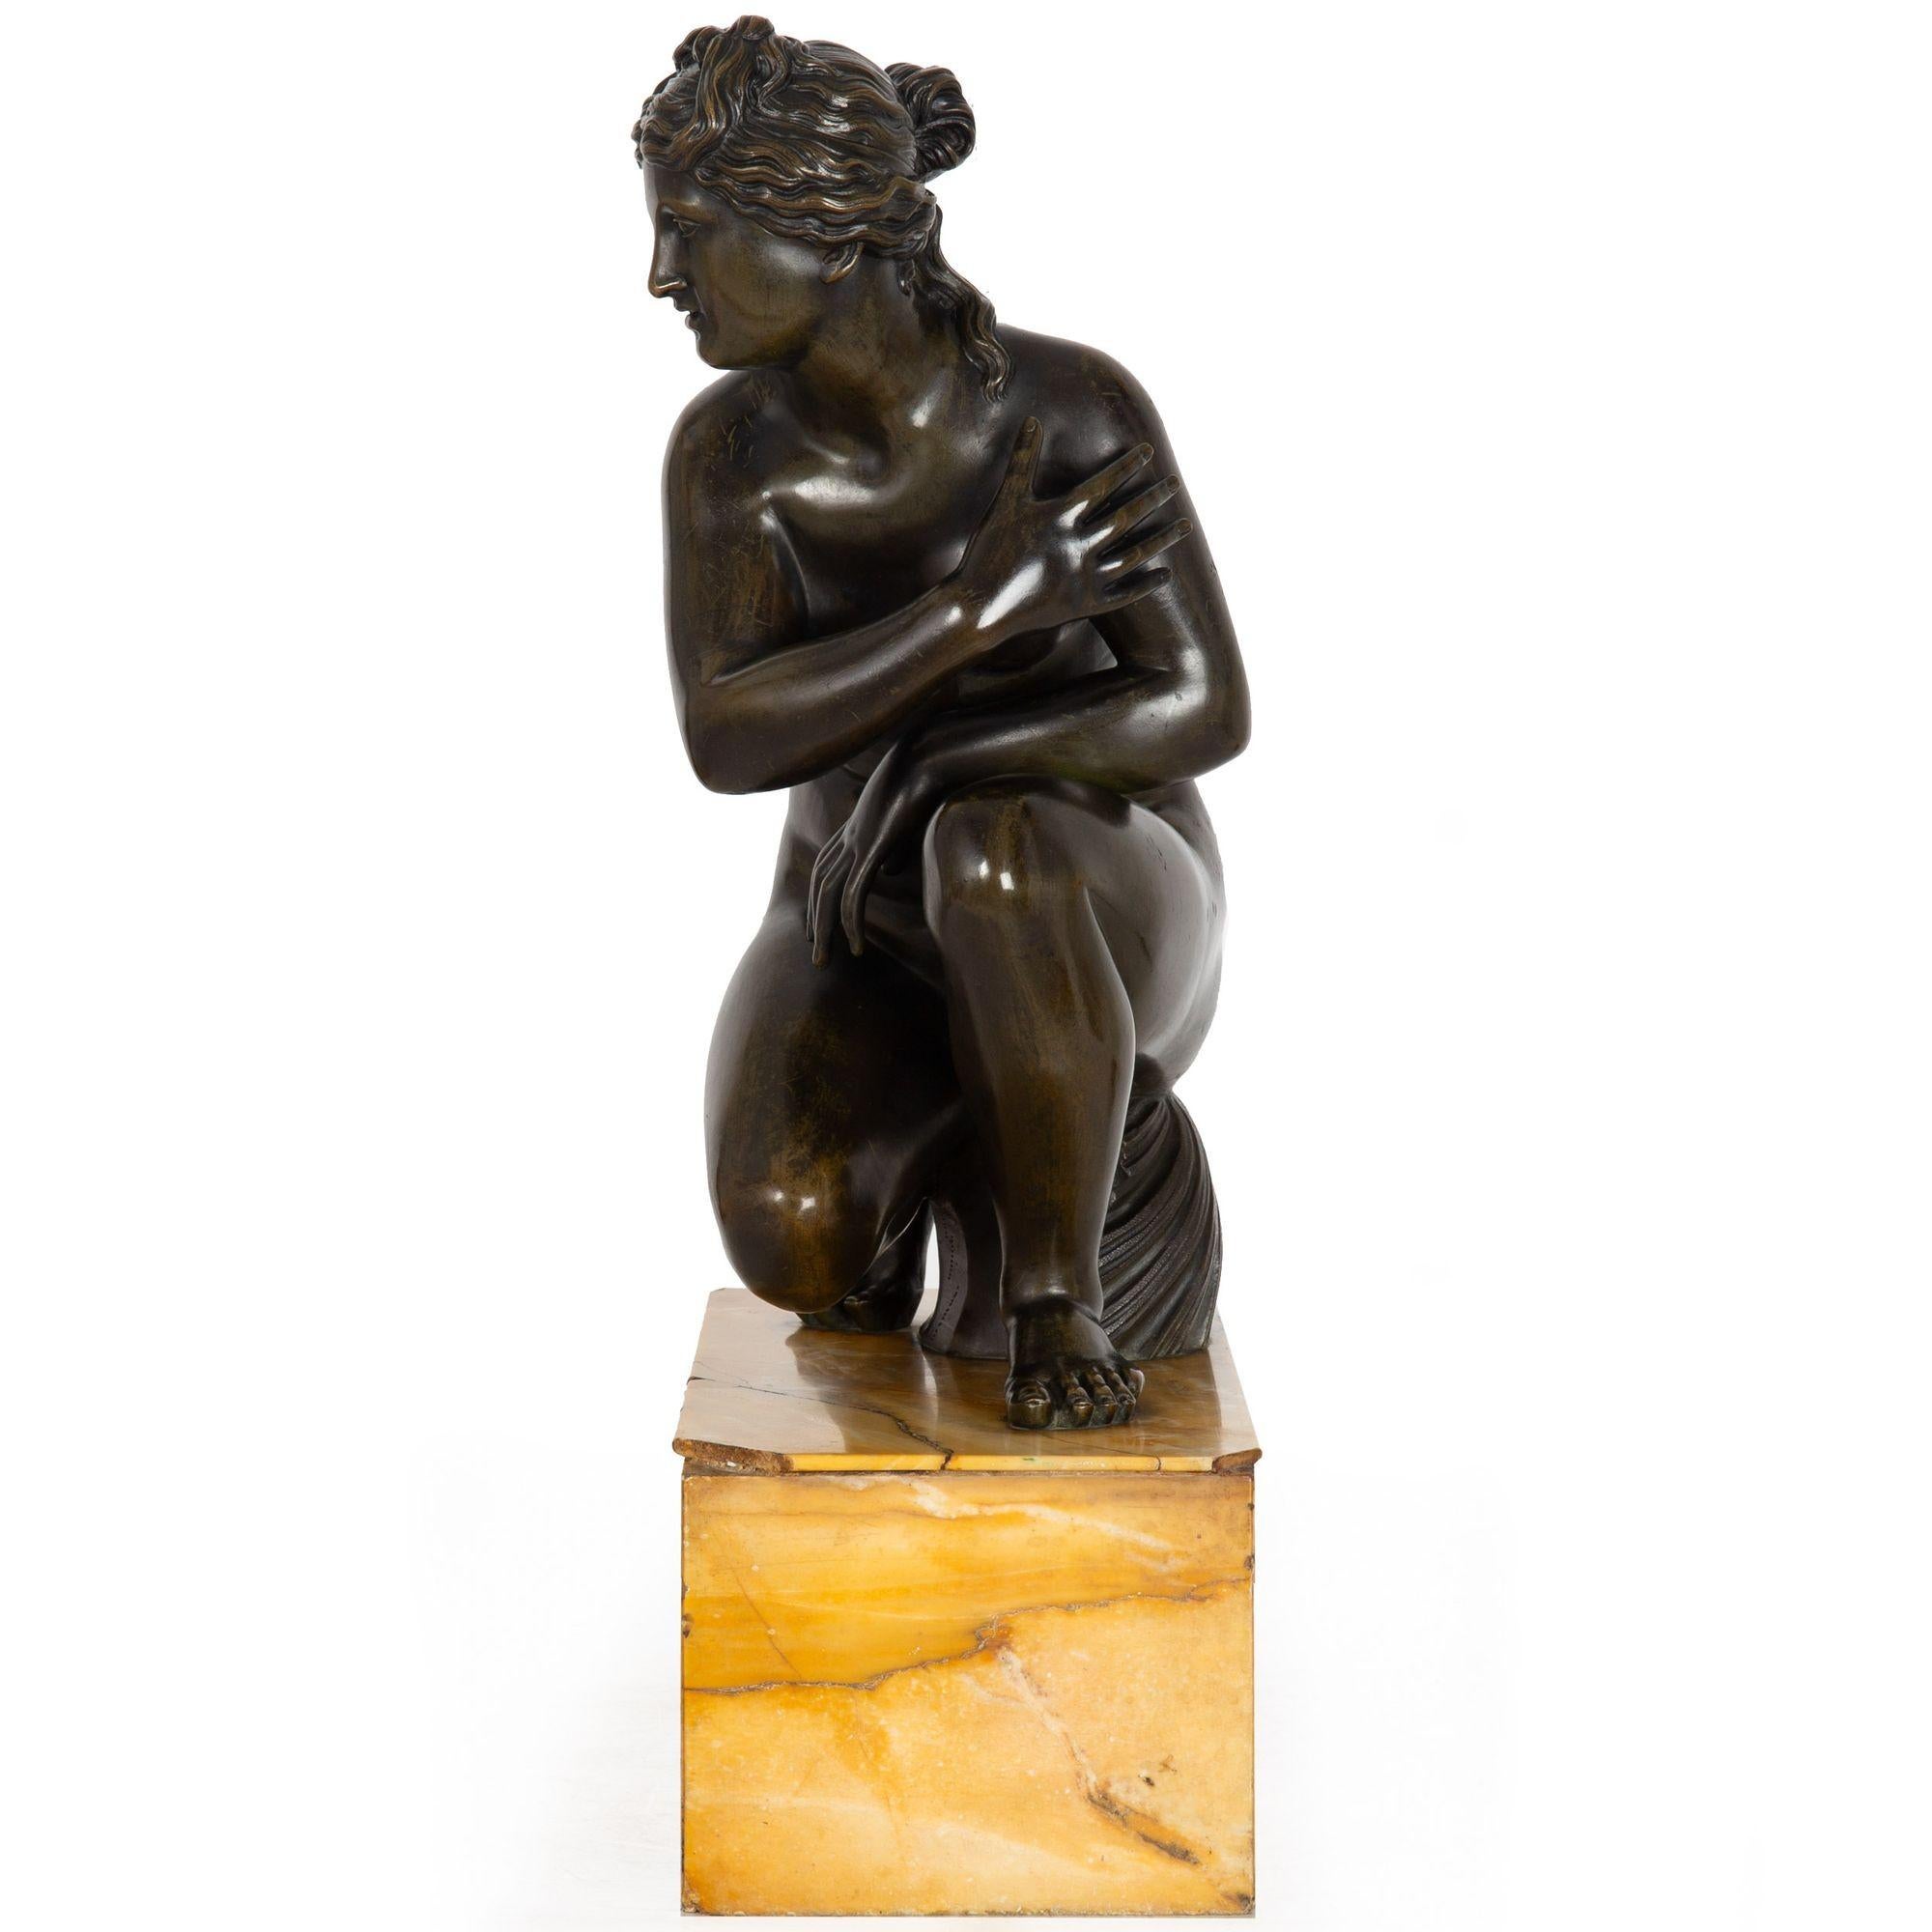 19th Century Rare Grand Tour Italian Antique Bronze Sculpture “Crouching Venus” circa 1850